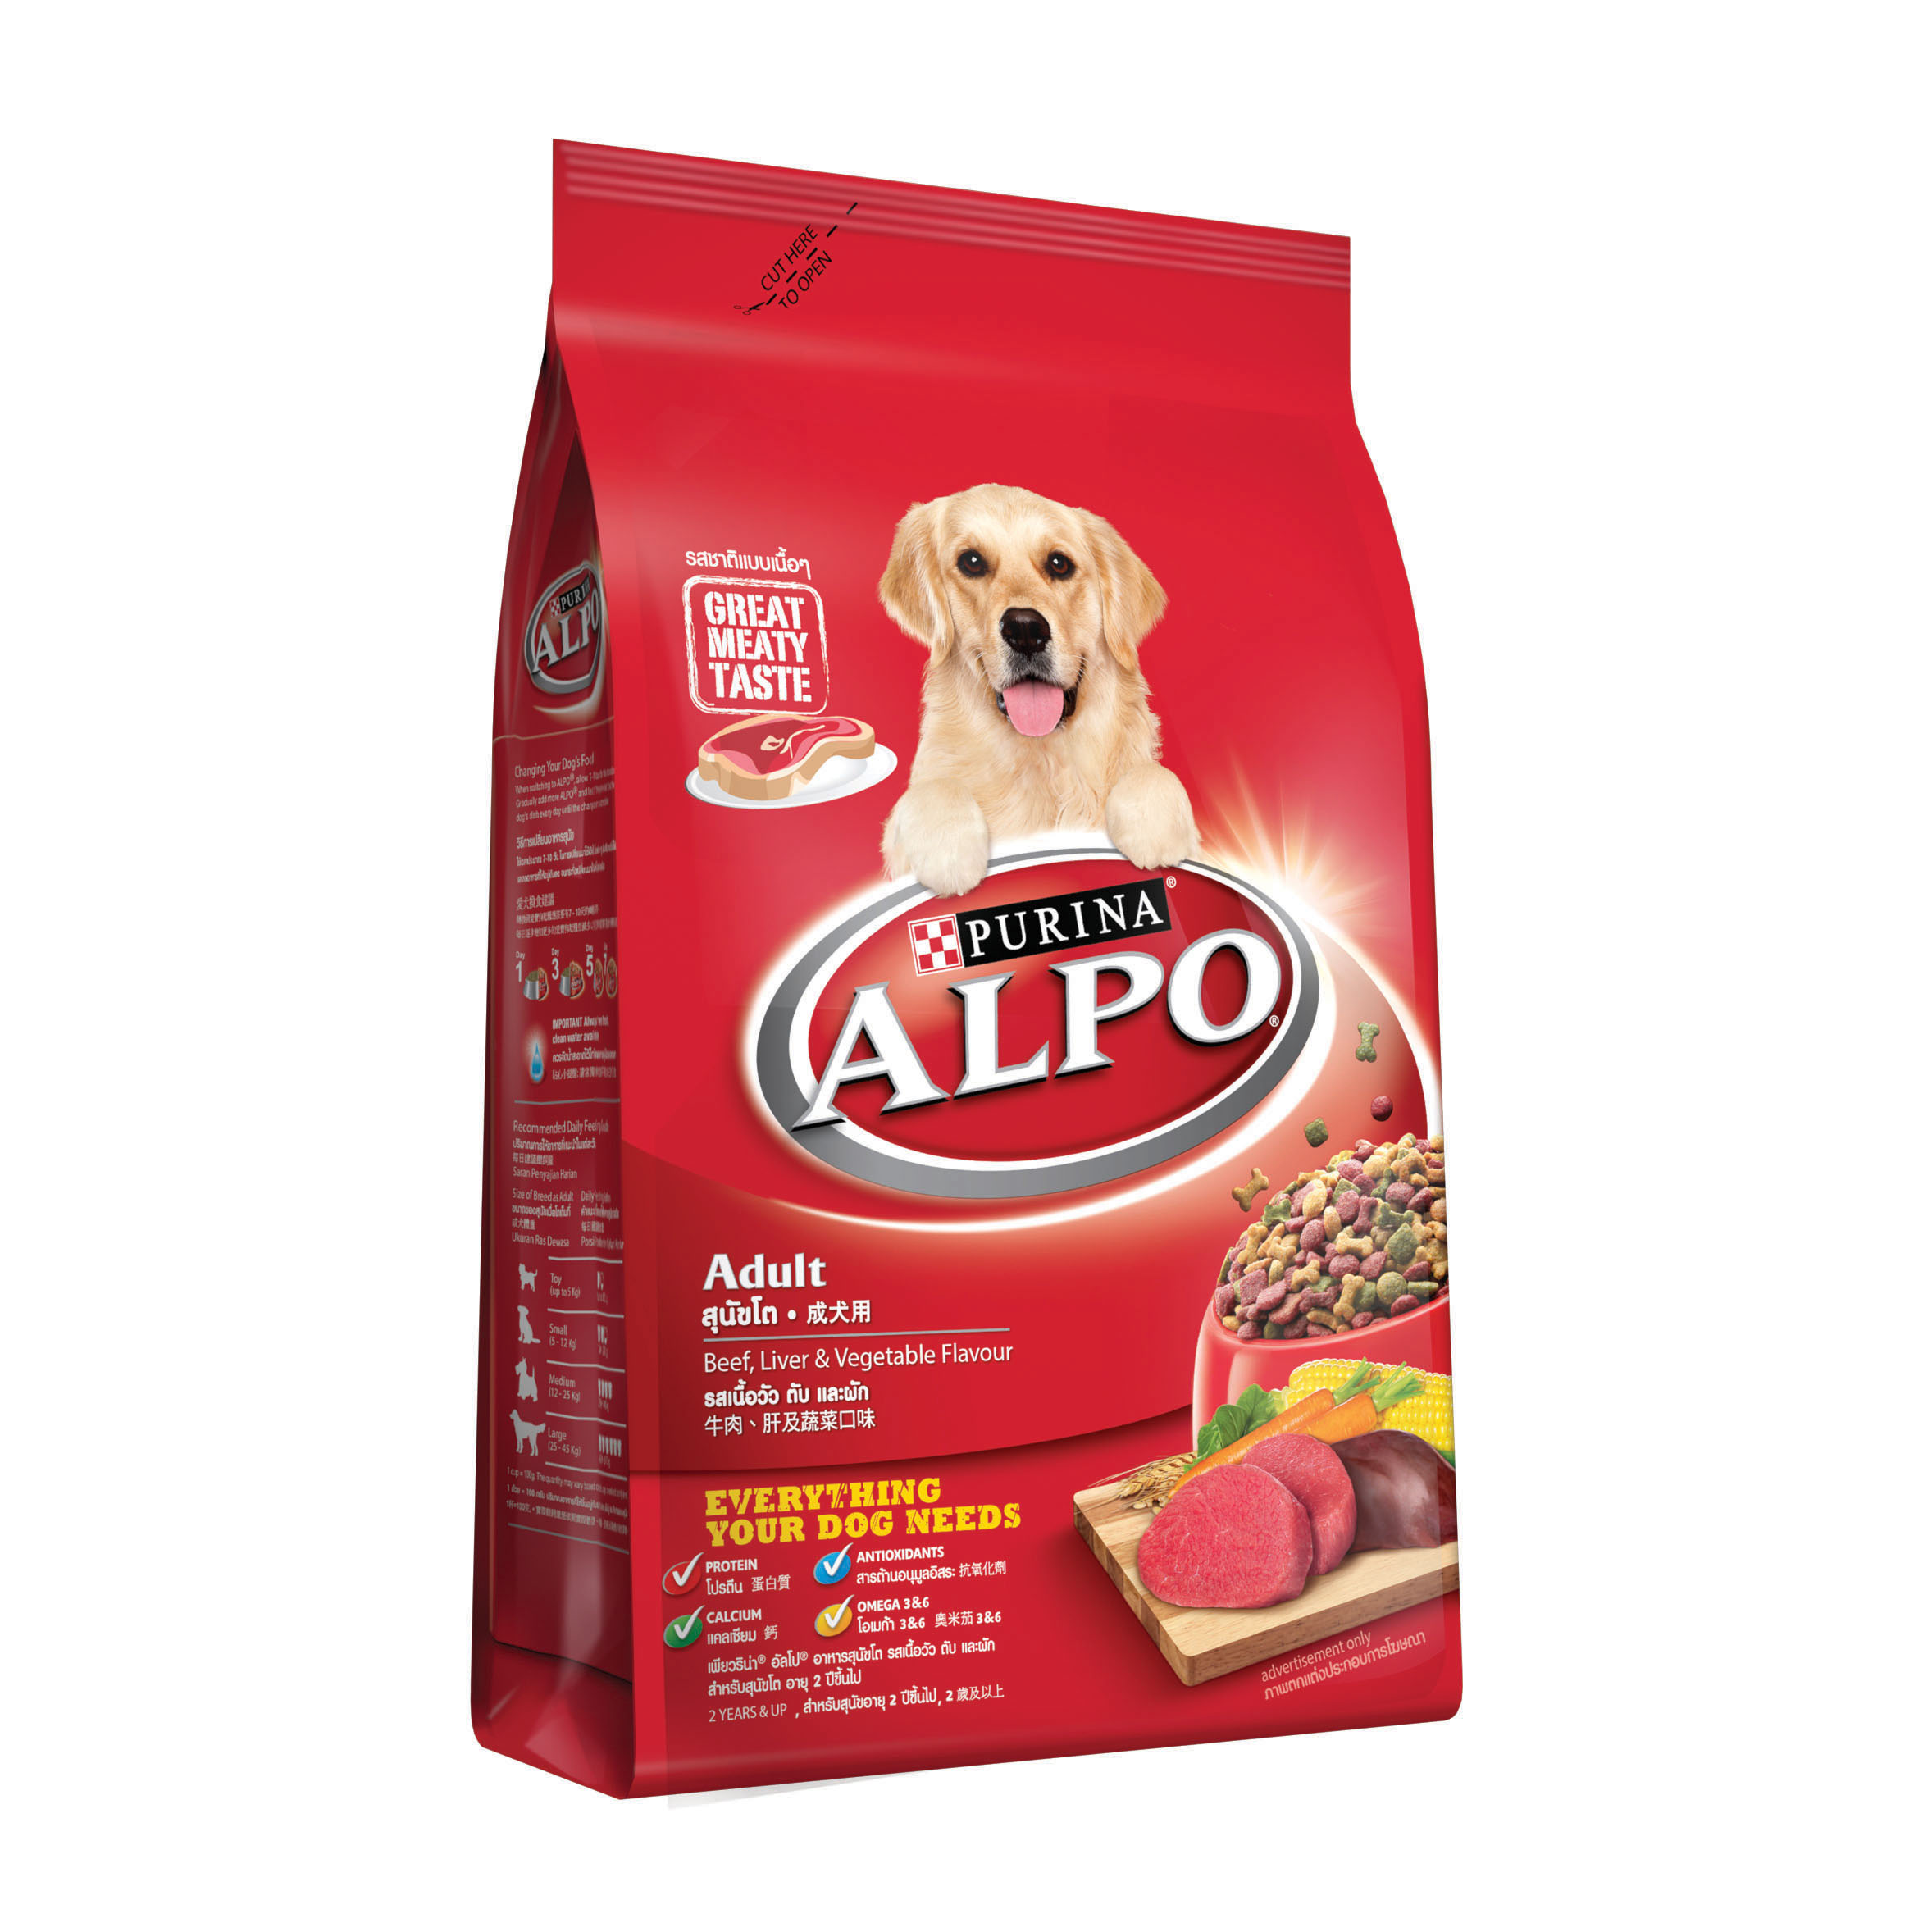 อัลโป อาหารสุนัขโต รสเนื้อวัว ตับ และผัก 3 กก./Alpo Adult Dog Food Beef, Liver and Vegetable Flavor 3 kg.